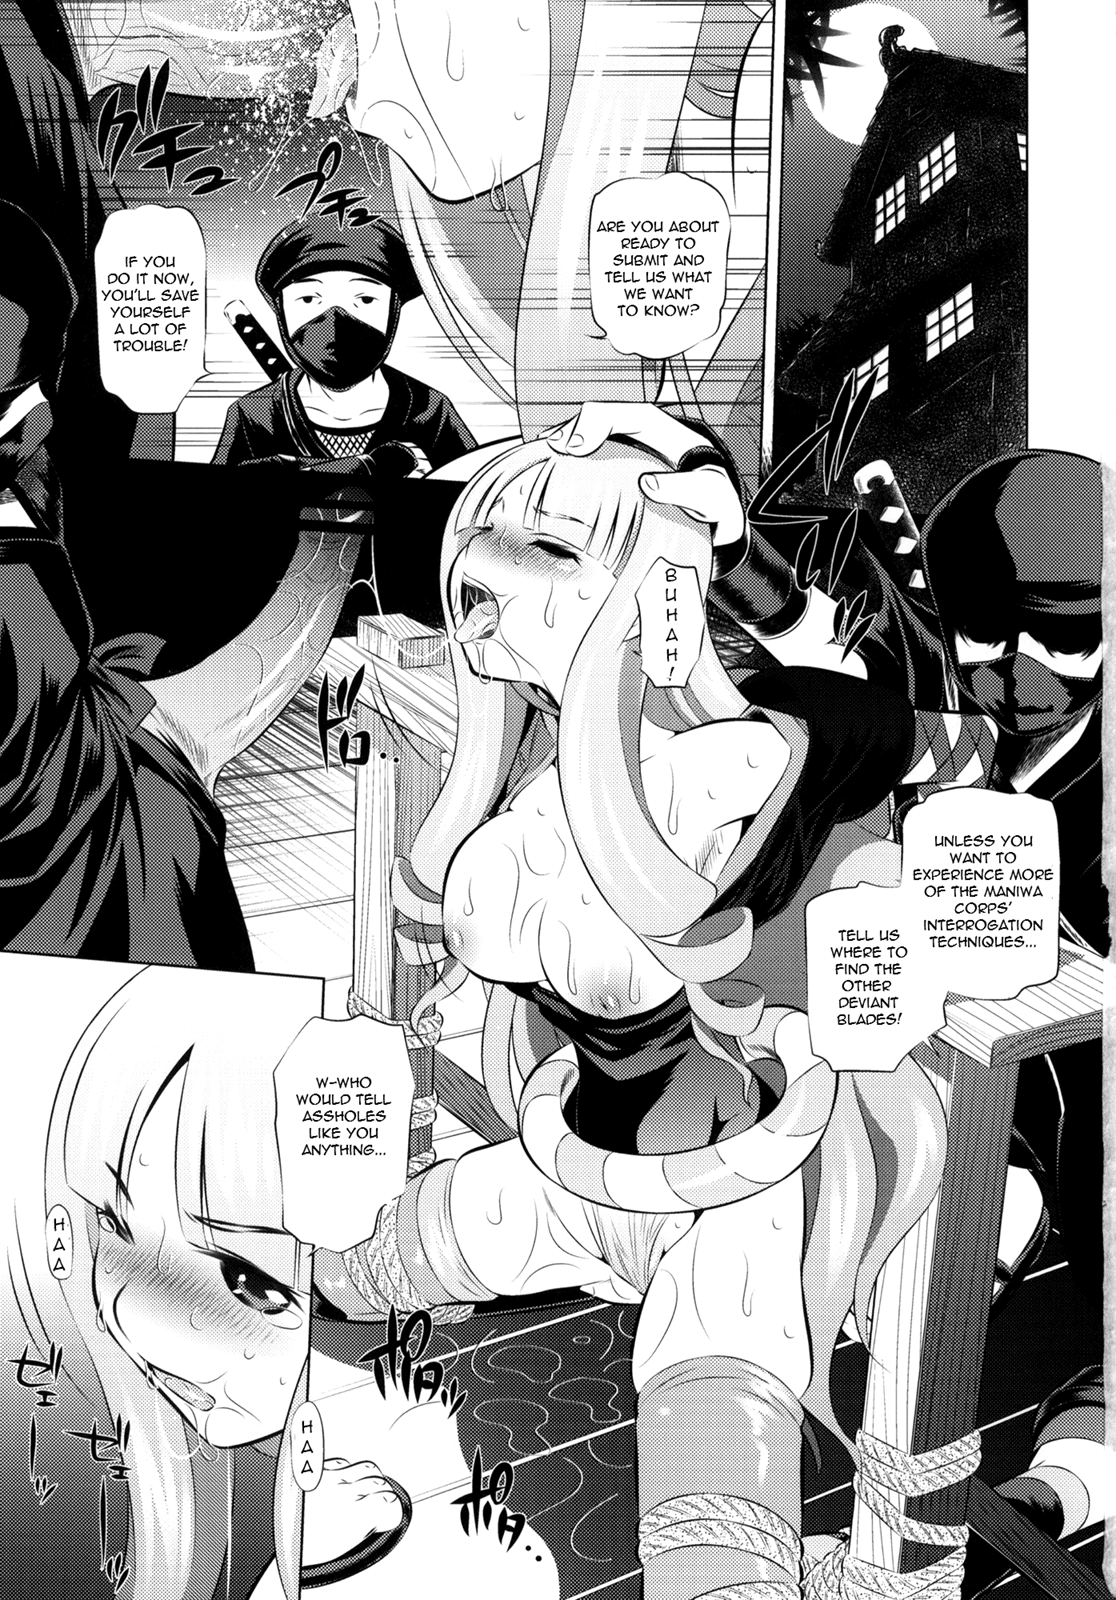 Togame vs Horse hentai manga picture 2